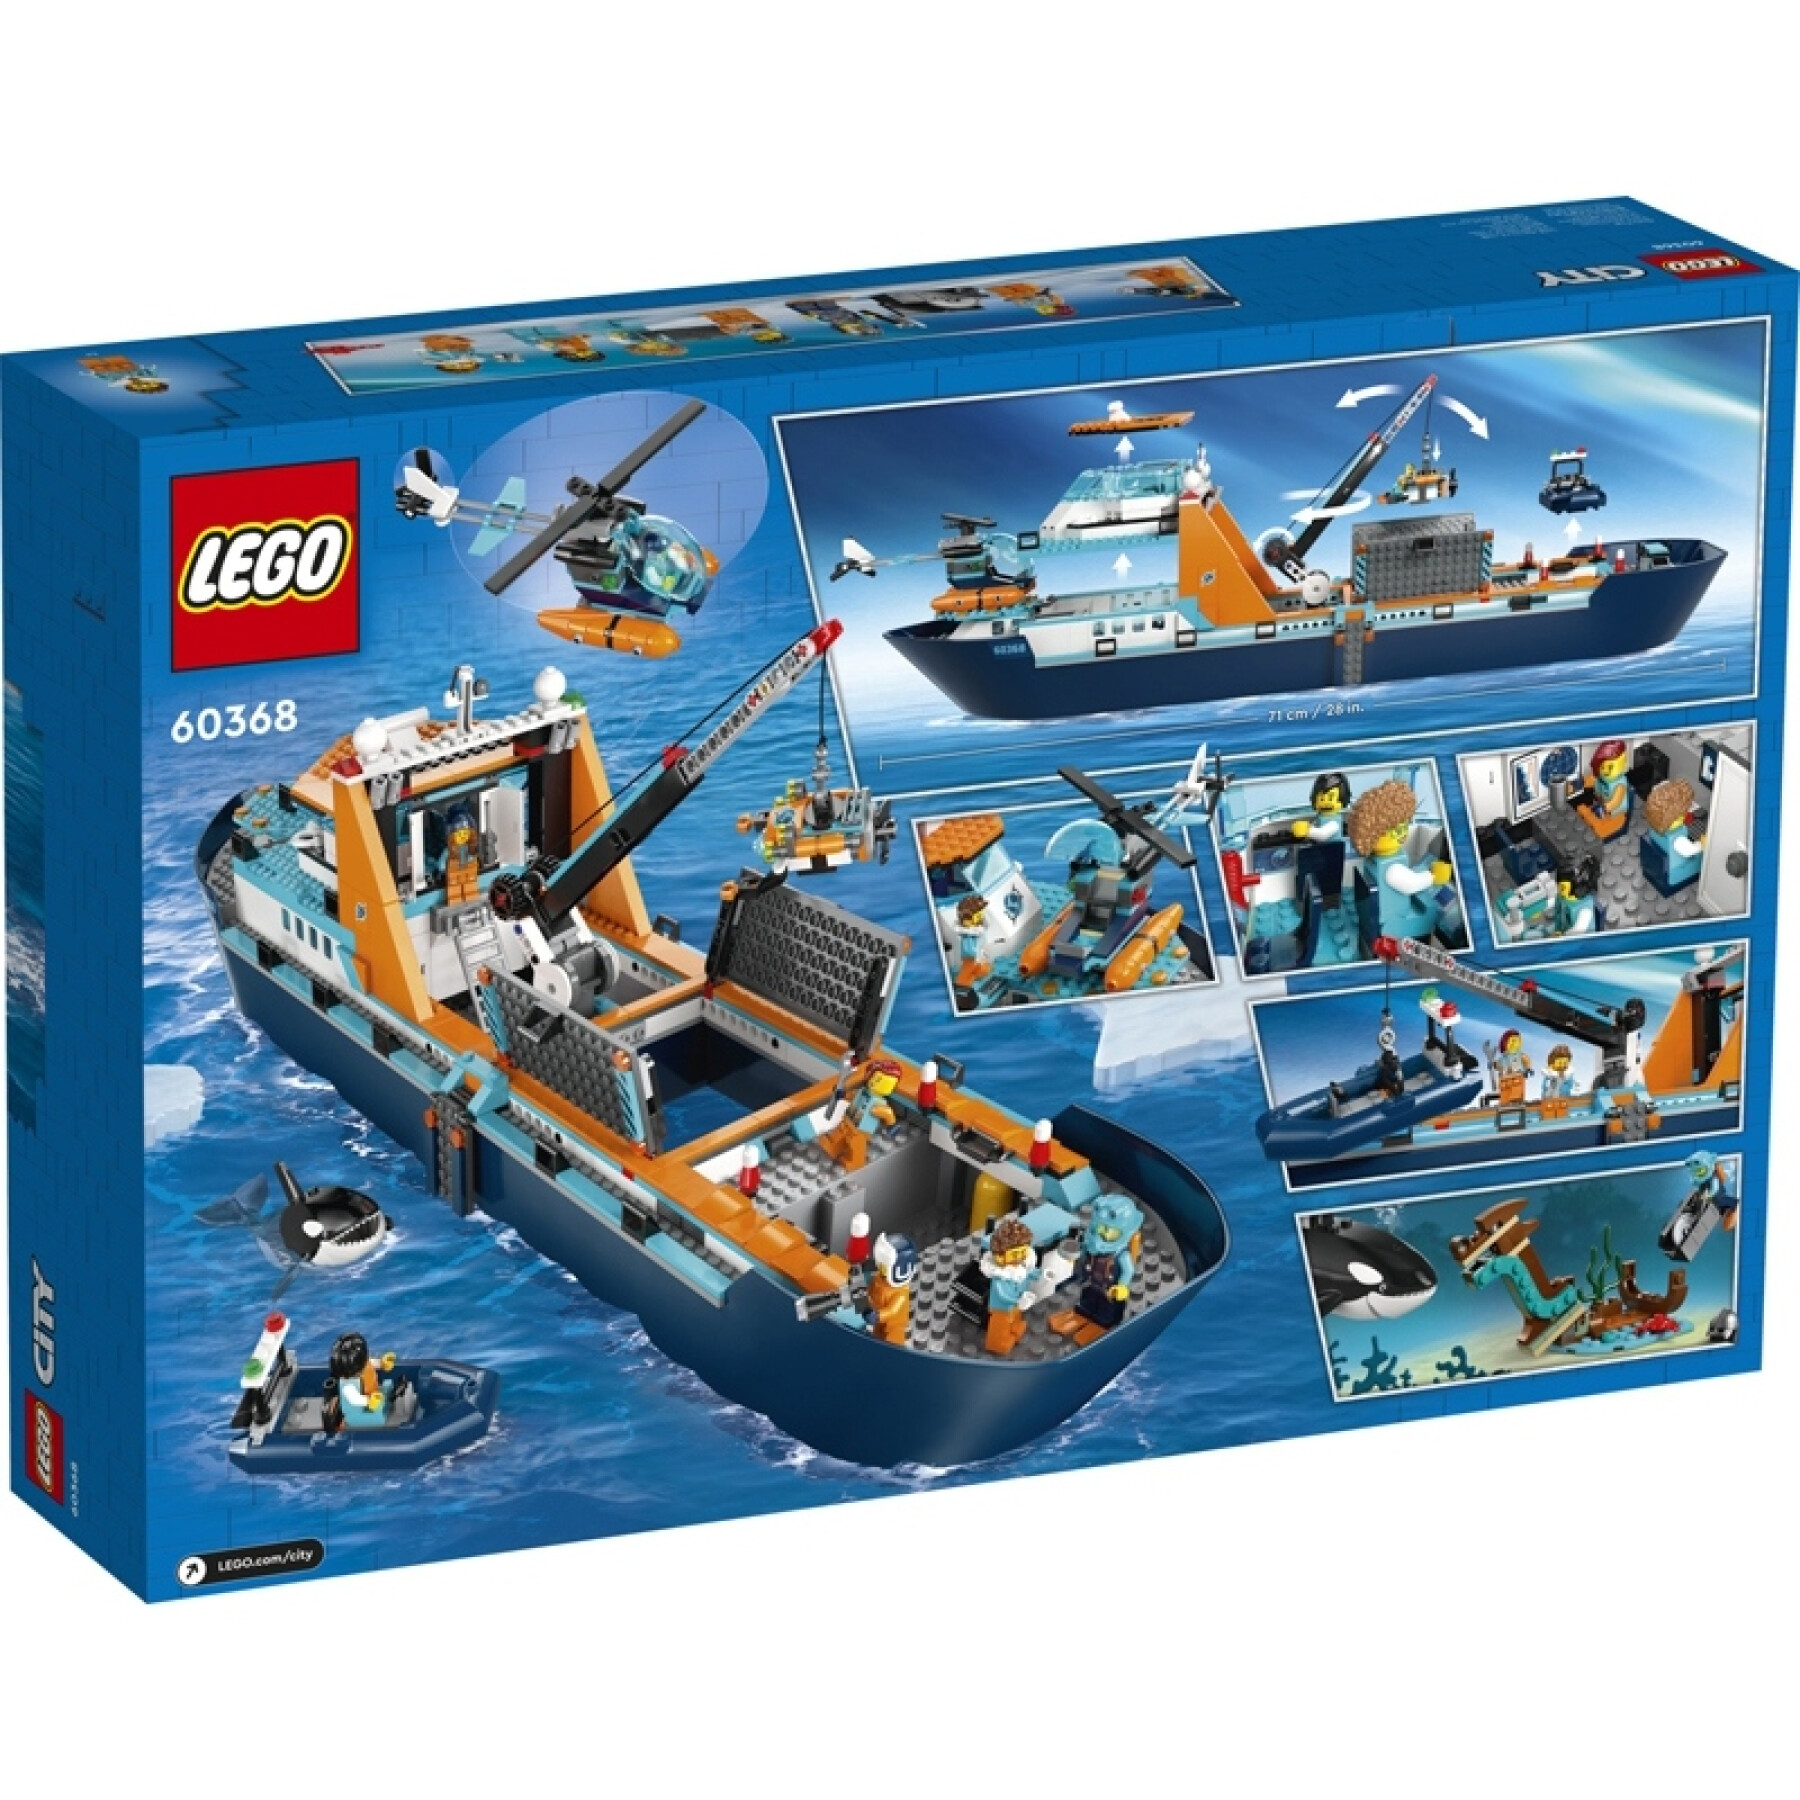 Konstruktionsspiele Schiff Arktische Erkundung Lego City